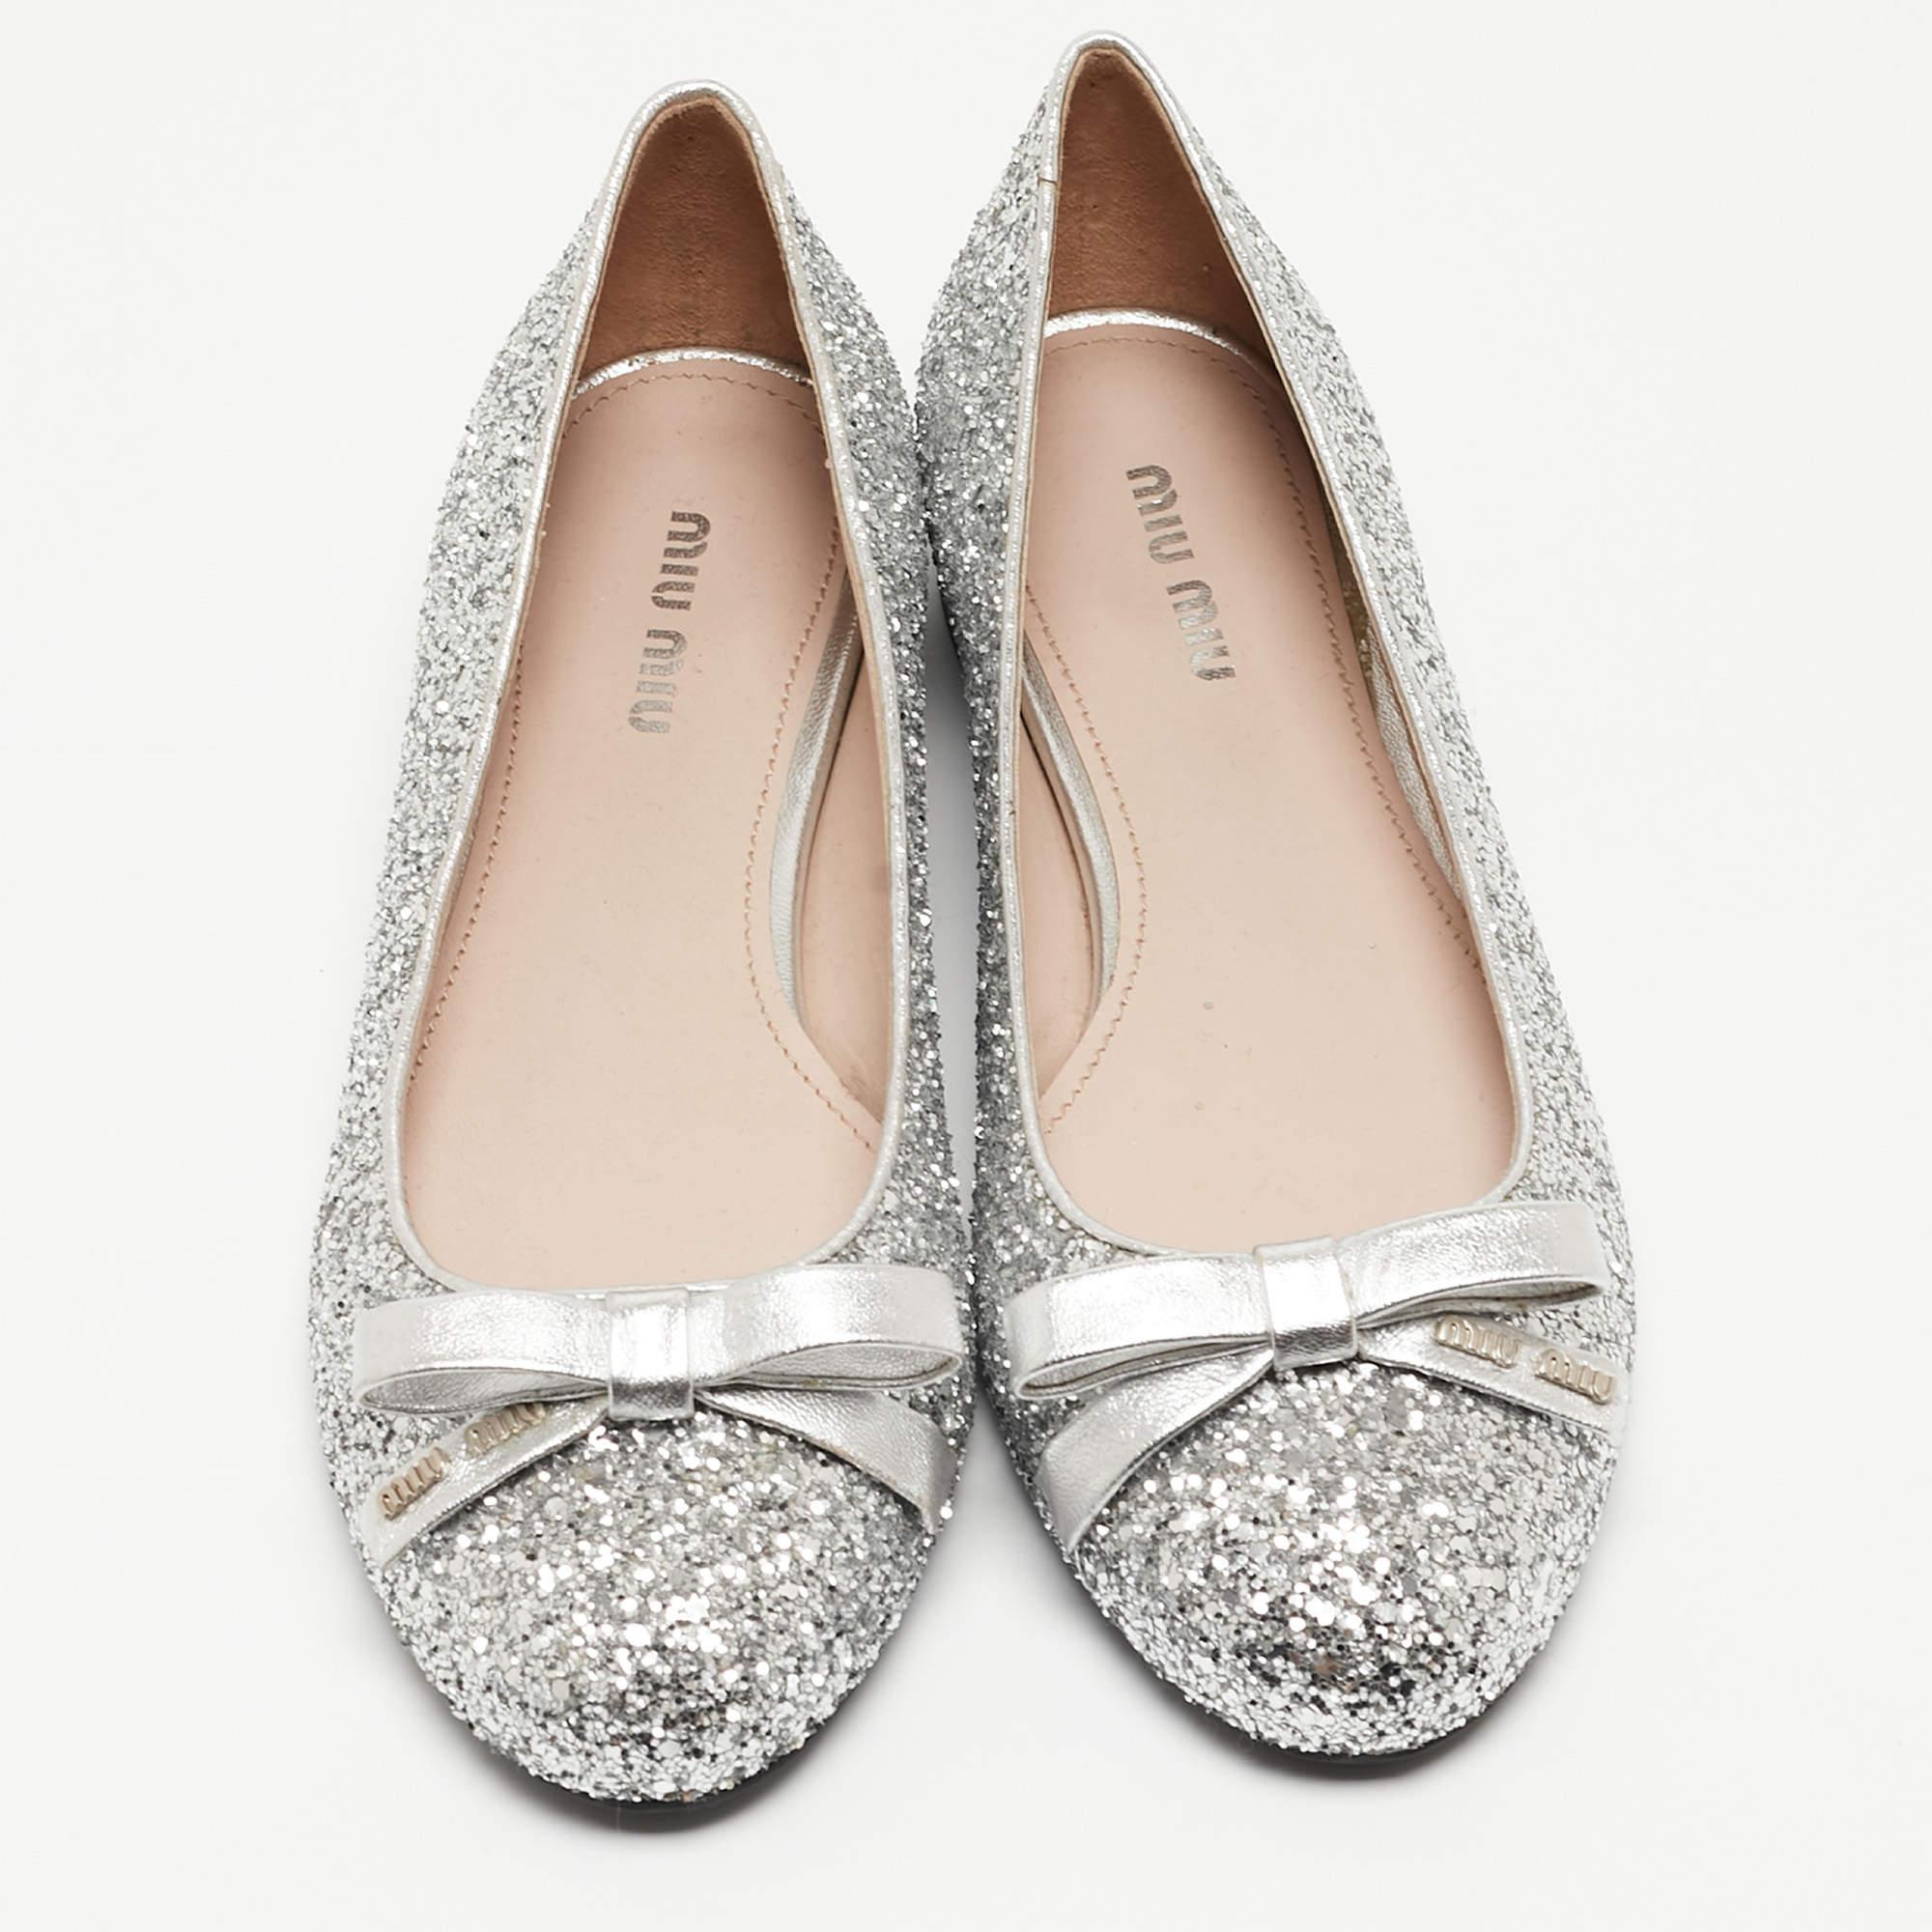 Miu Miu Silver Coarse Glitter Bow Ballet Flats Size 36.5 In New Condition For Sale In Dubai, Al Qouz 2